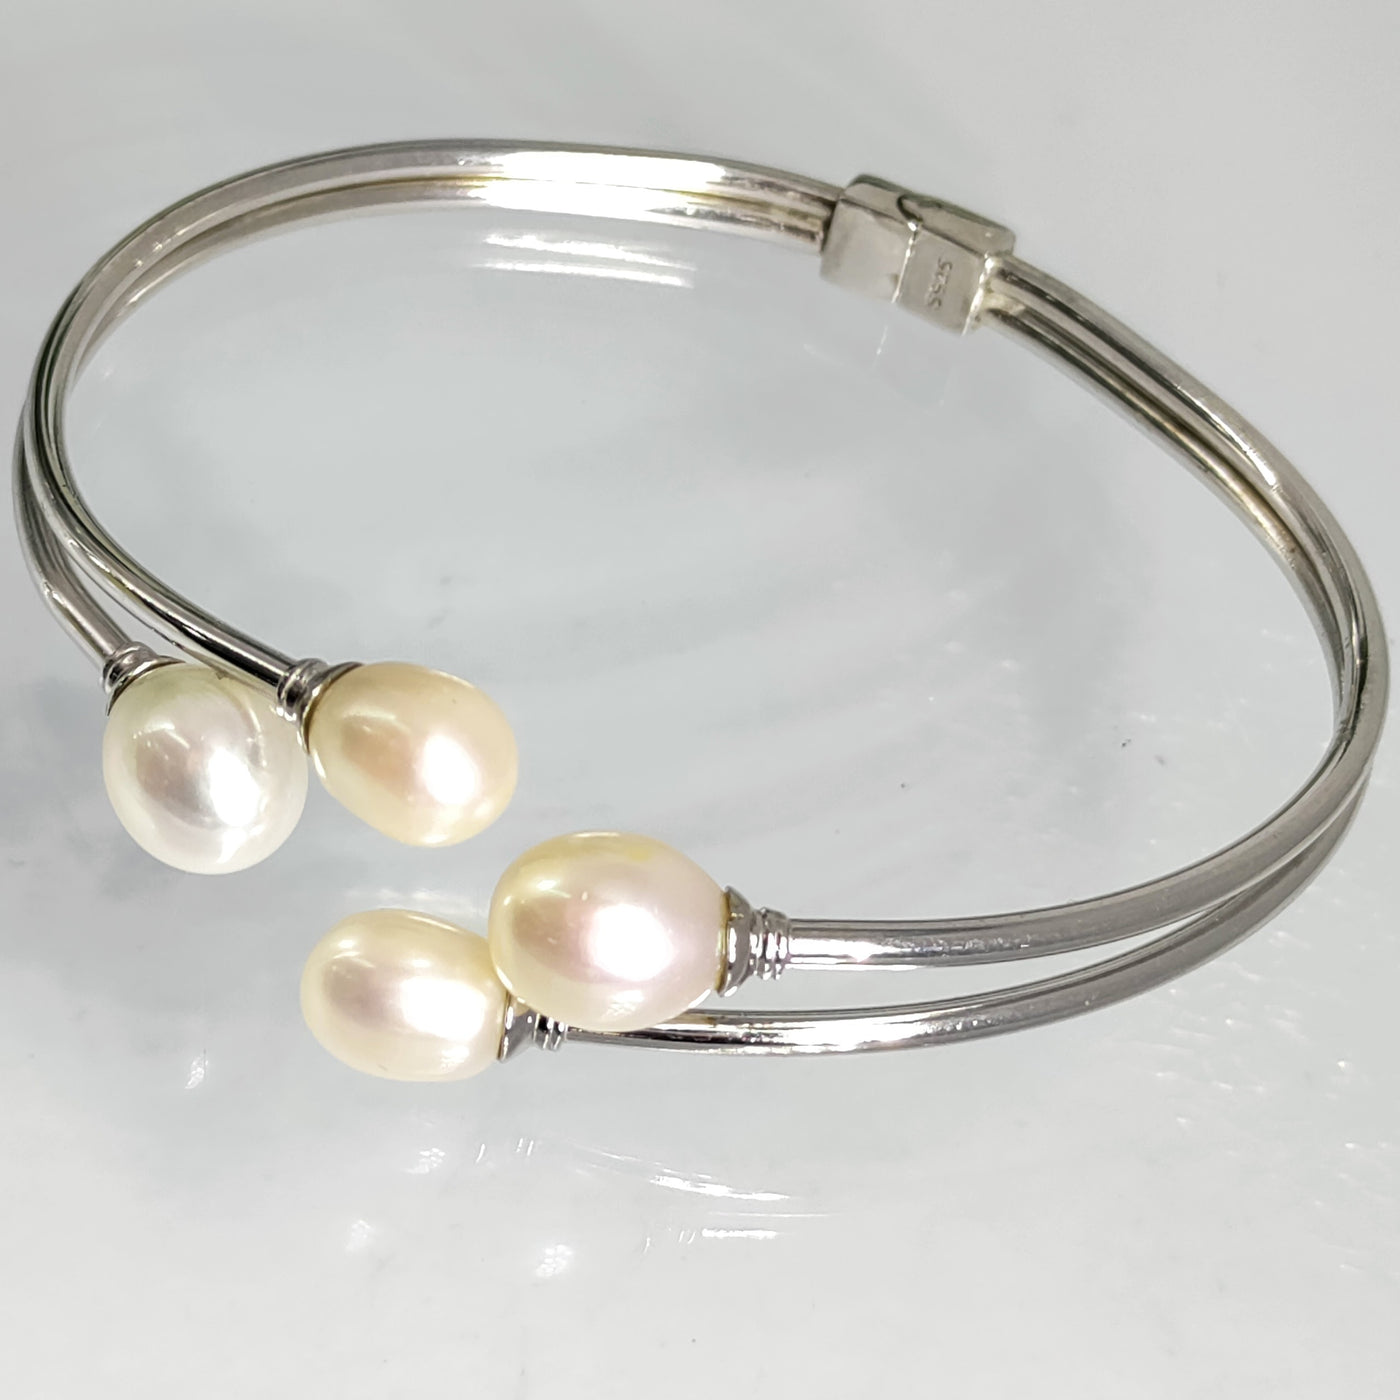 "Clutch" Sz Med Bracelet - Fresh Water Pearl, Sterling